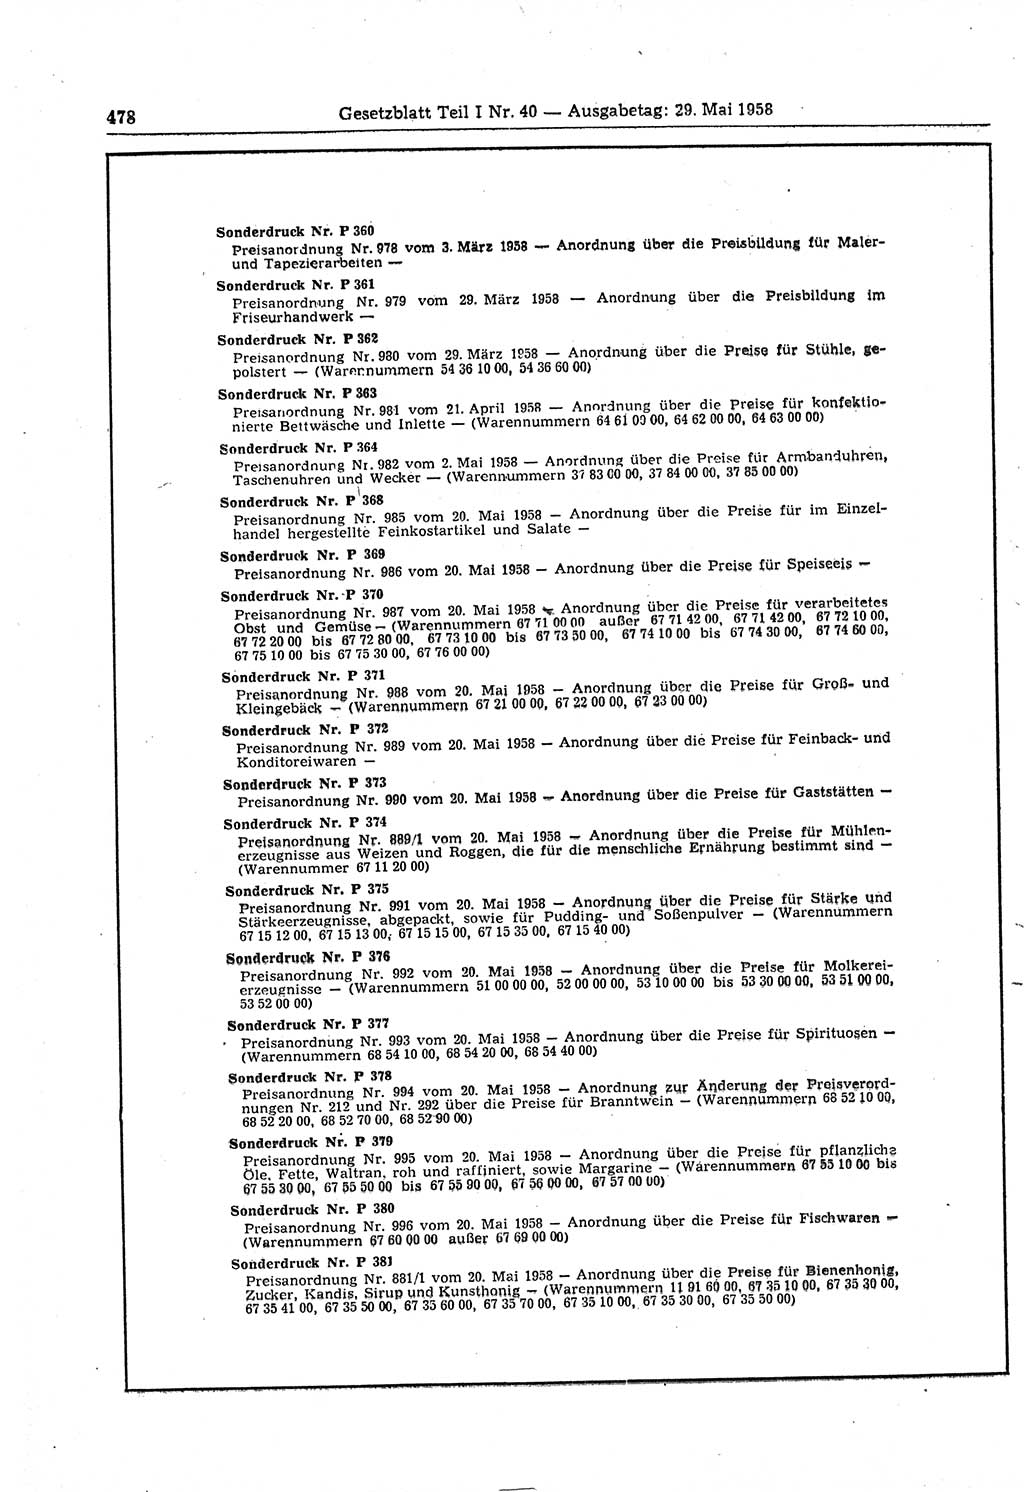 Gesetzblatt (GBl.) der Deutschen Demokratischen Republik (DDR) Teil Ⅰ 1958, Seite 478 (GBl. DDR Ⅰ 1958, S. 478)